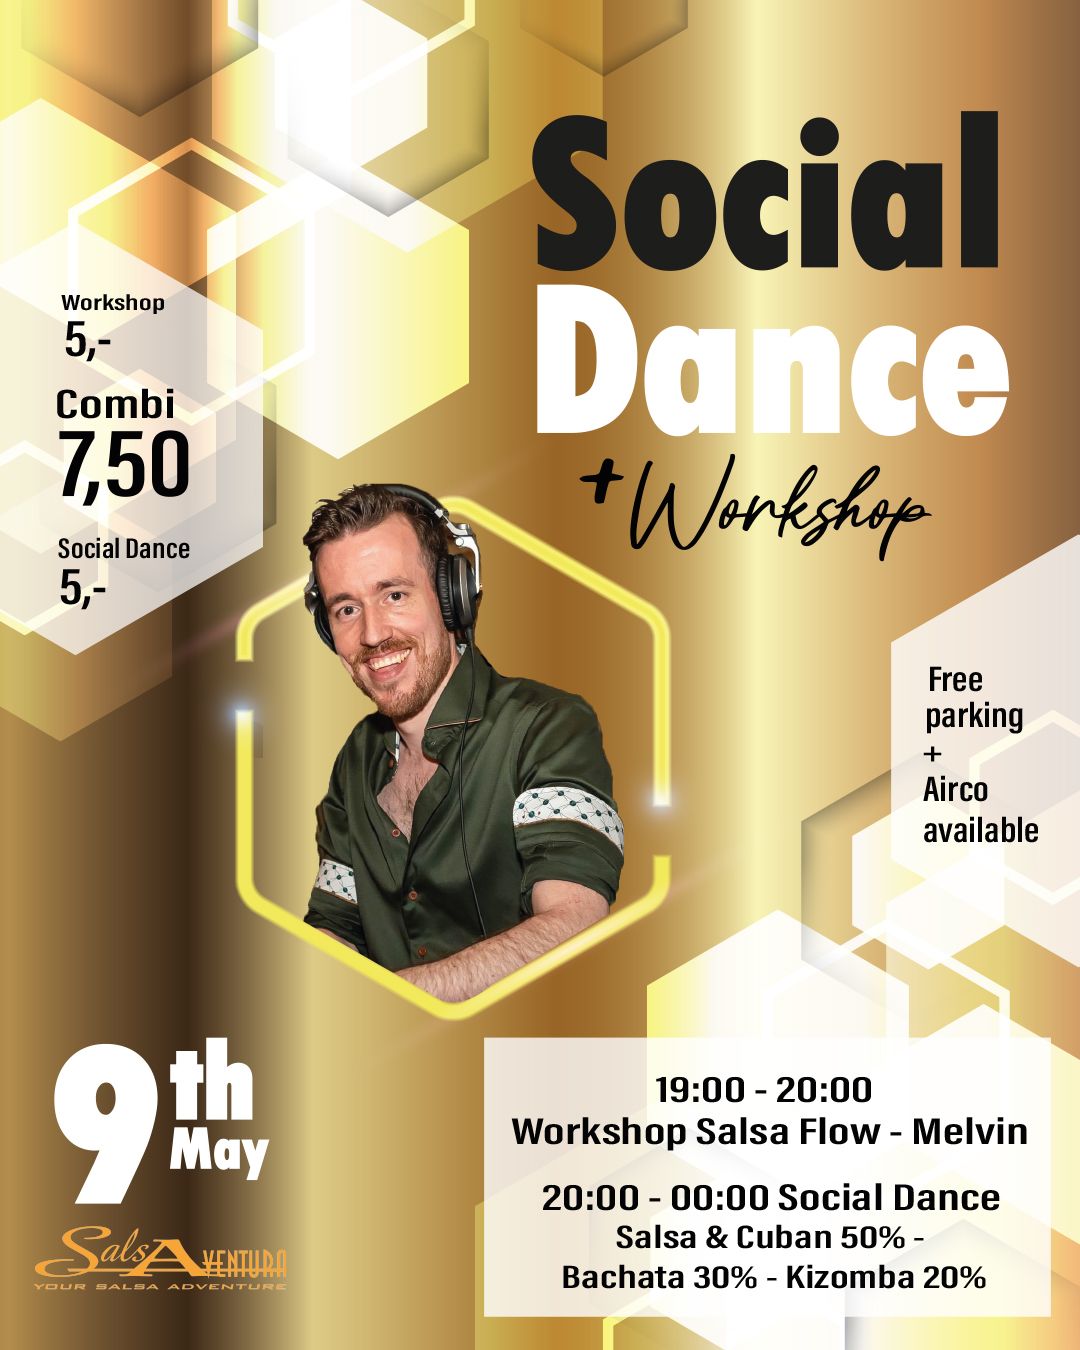 Social Dance - Latin Cube - Hemelvaart